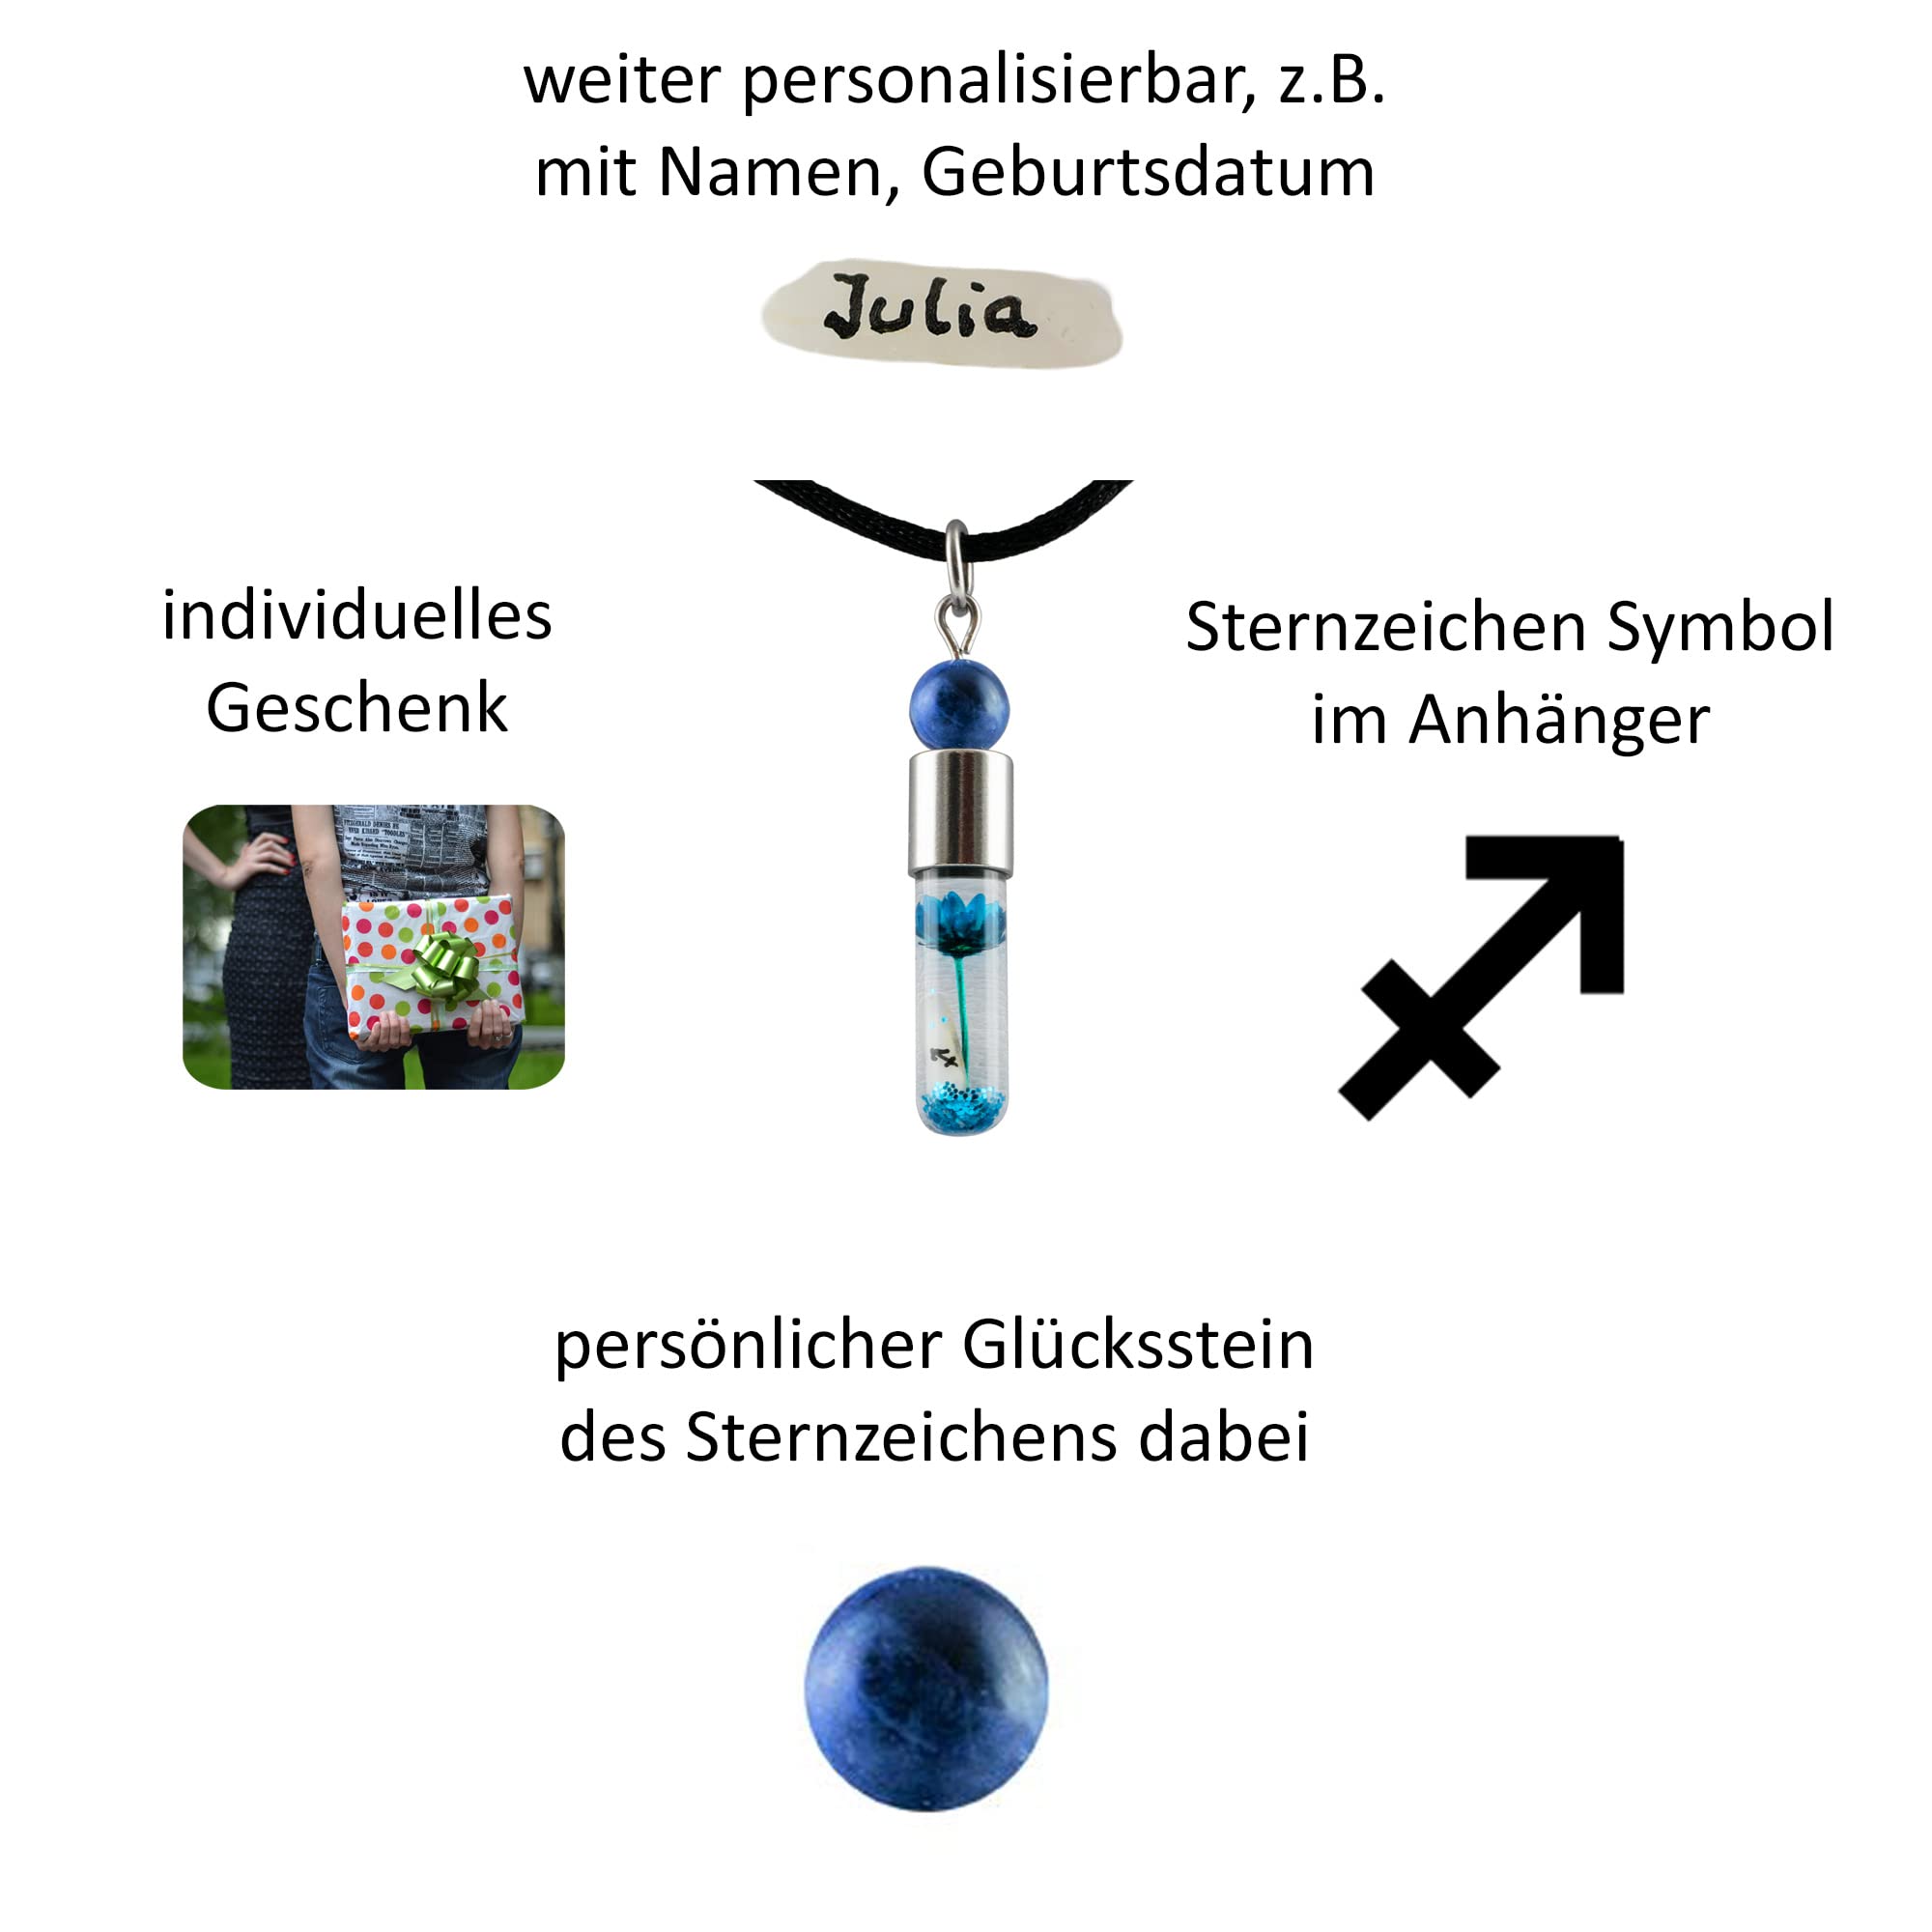 Sternzeichen Schütze, 23. November - 21. Dezember, Halskette mit Glückstein Sodalith und Sternzeichensymbol